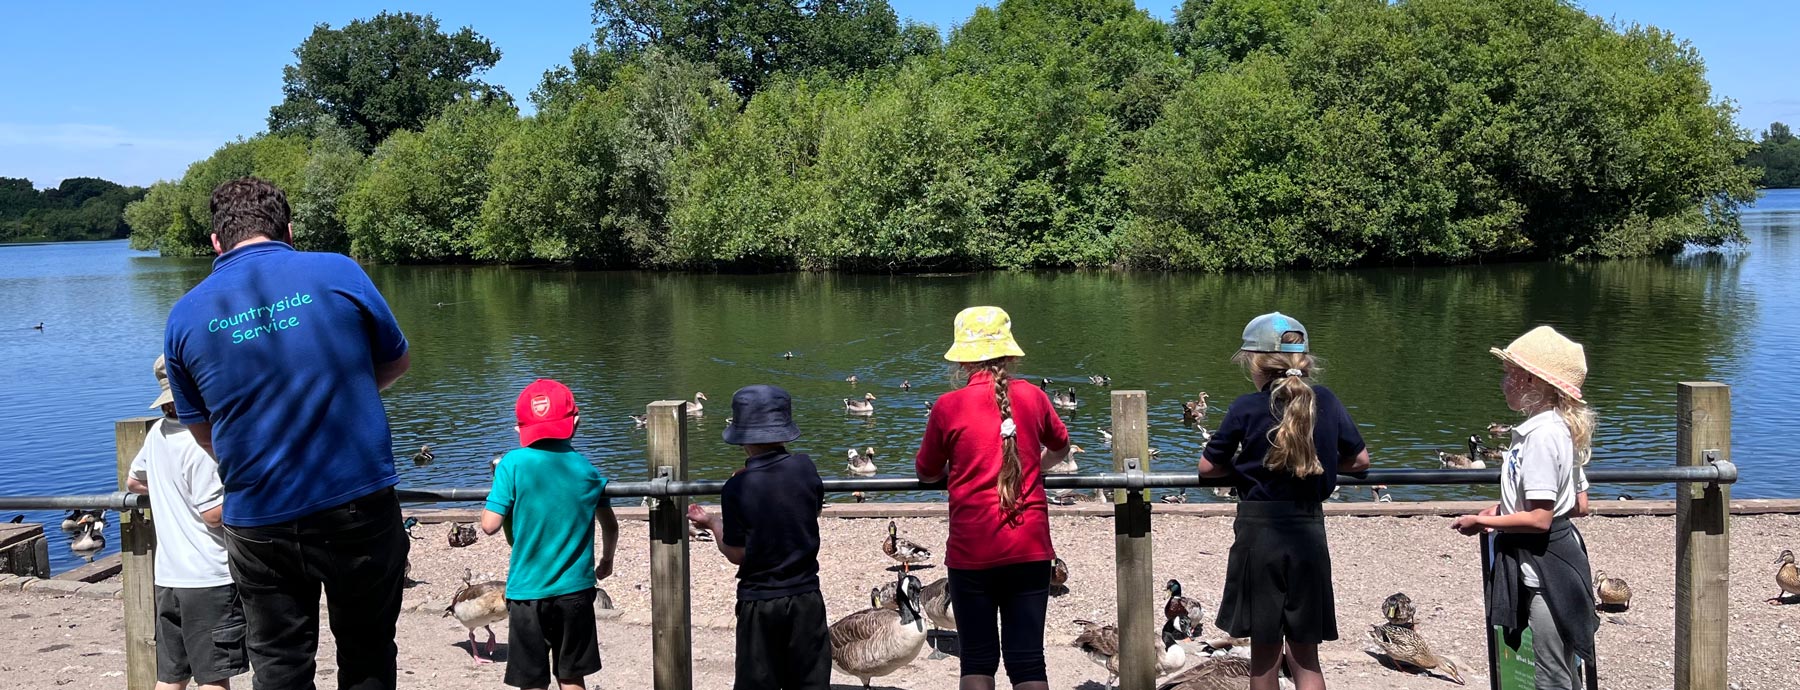 Children on a school visit feeding ducks by a lake (Grantham Farm Montessori School)